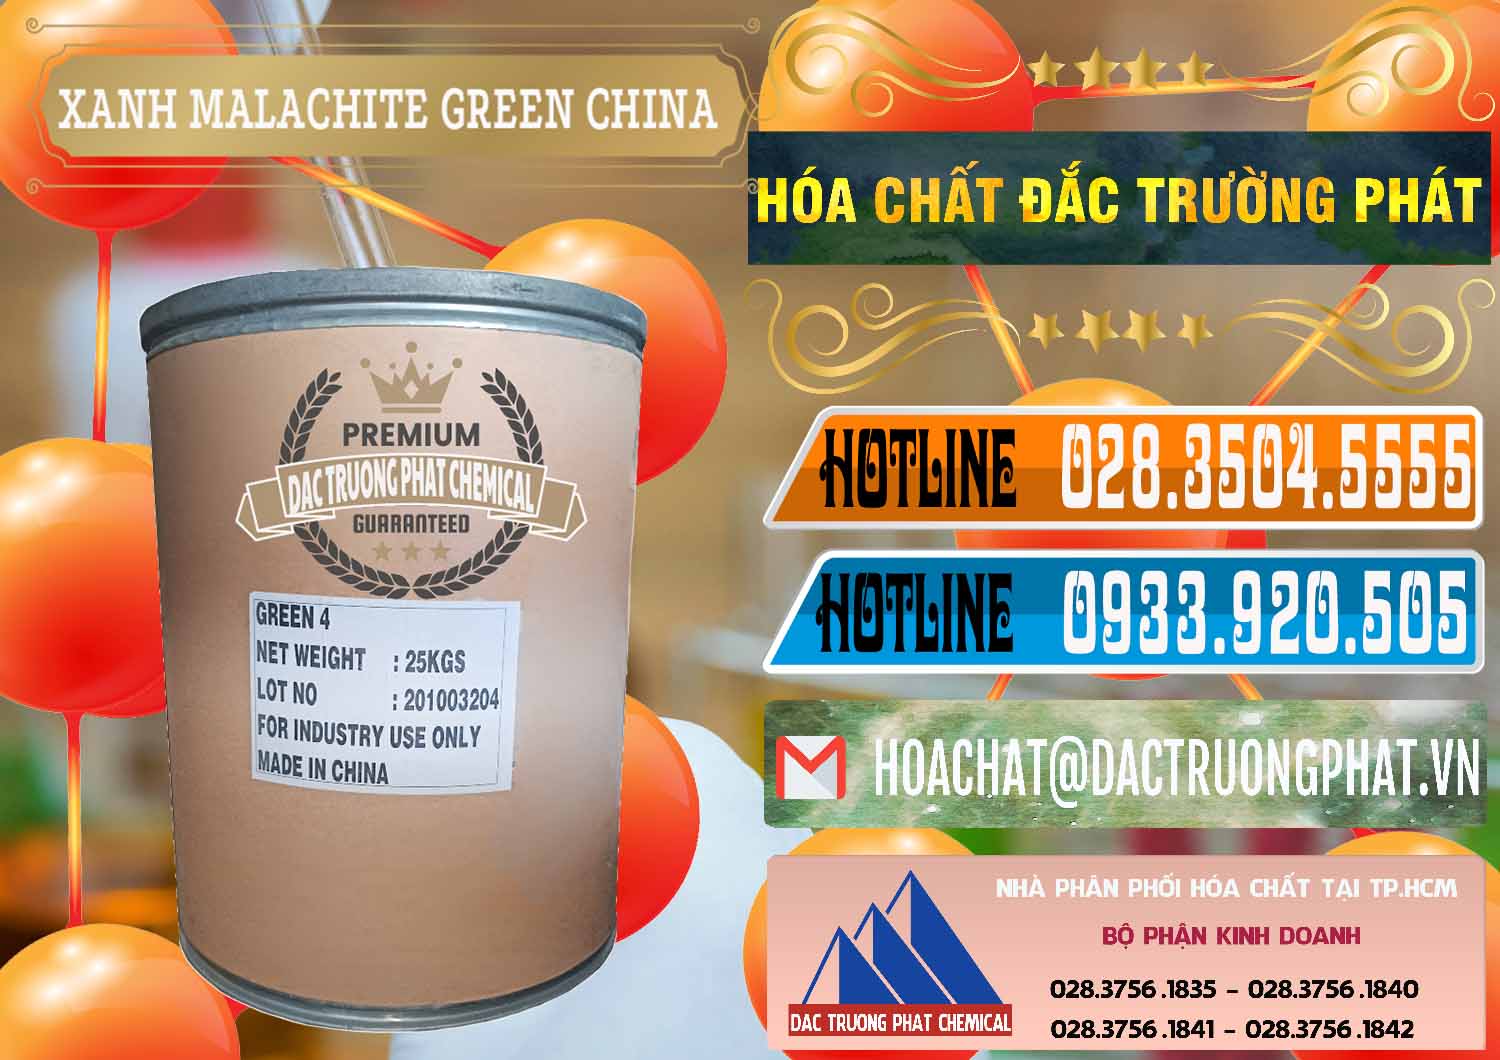 Cty chuyên cung cấp & bán Xanh Malachite Green Trung Quốc China - 0325 - Cty bán ( phân phối ) hóa chất tại TP.HCM - stmp.net